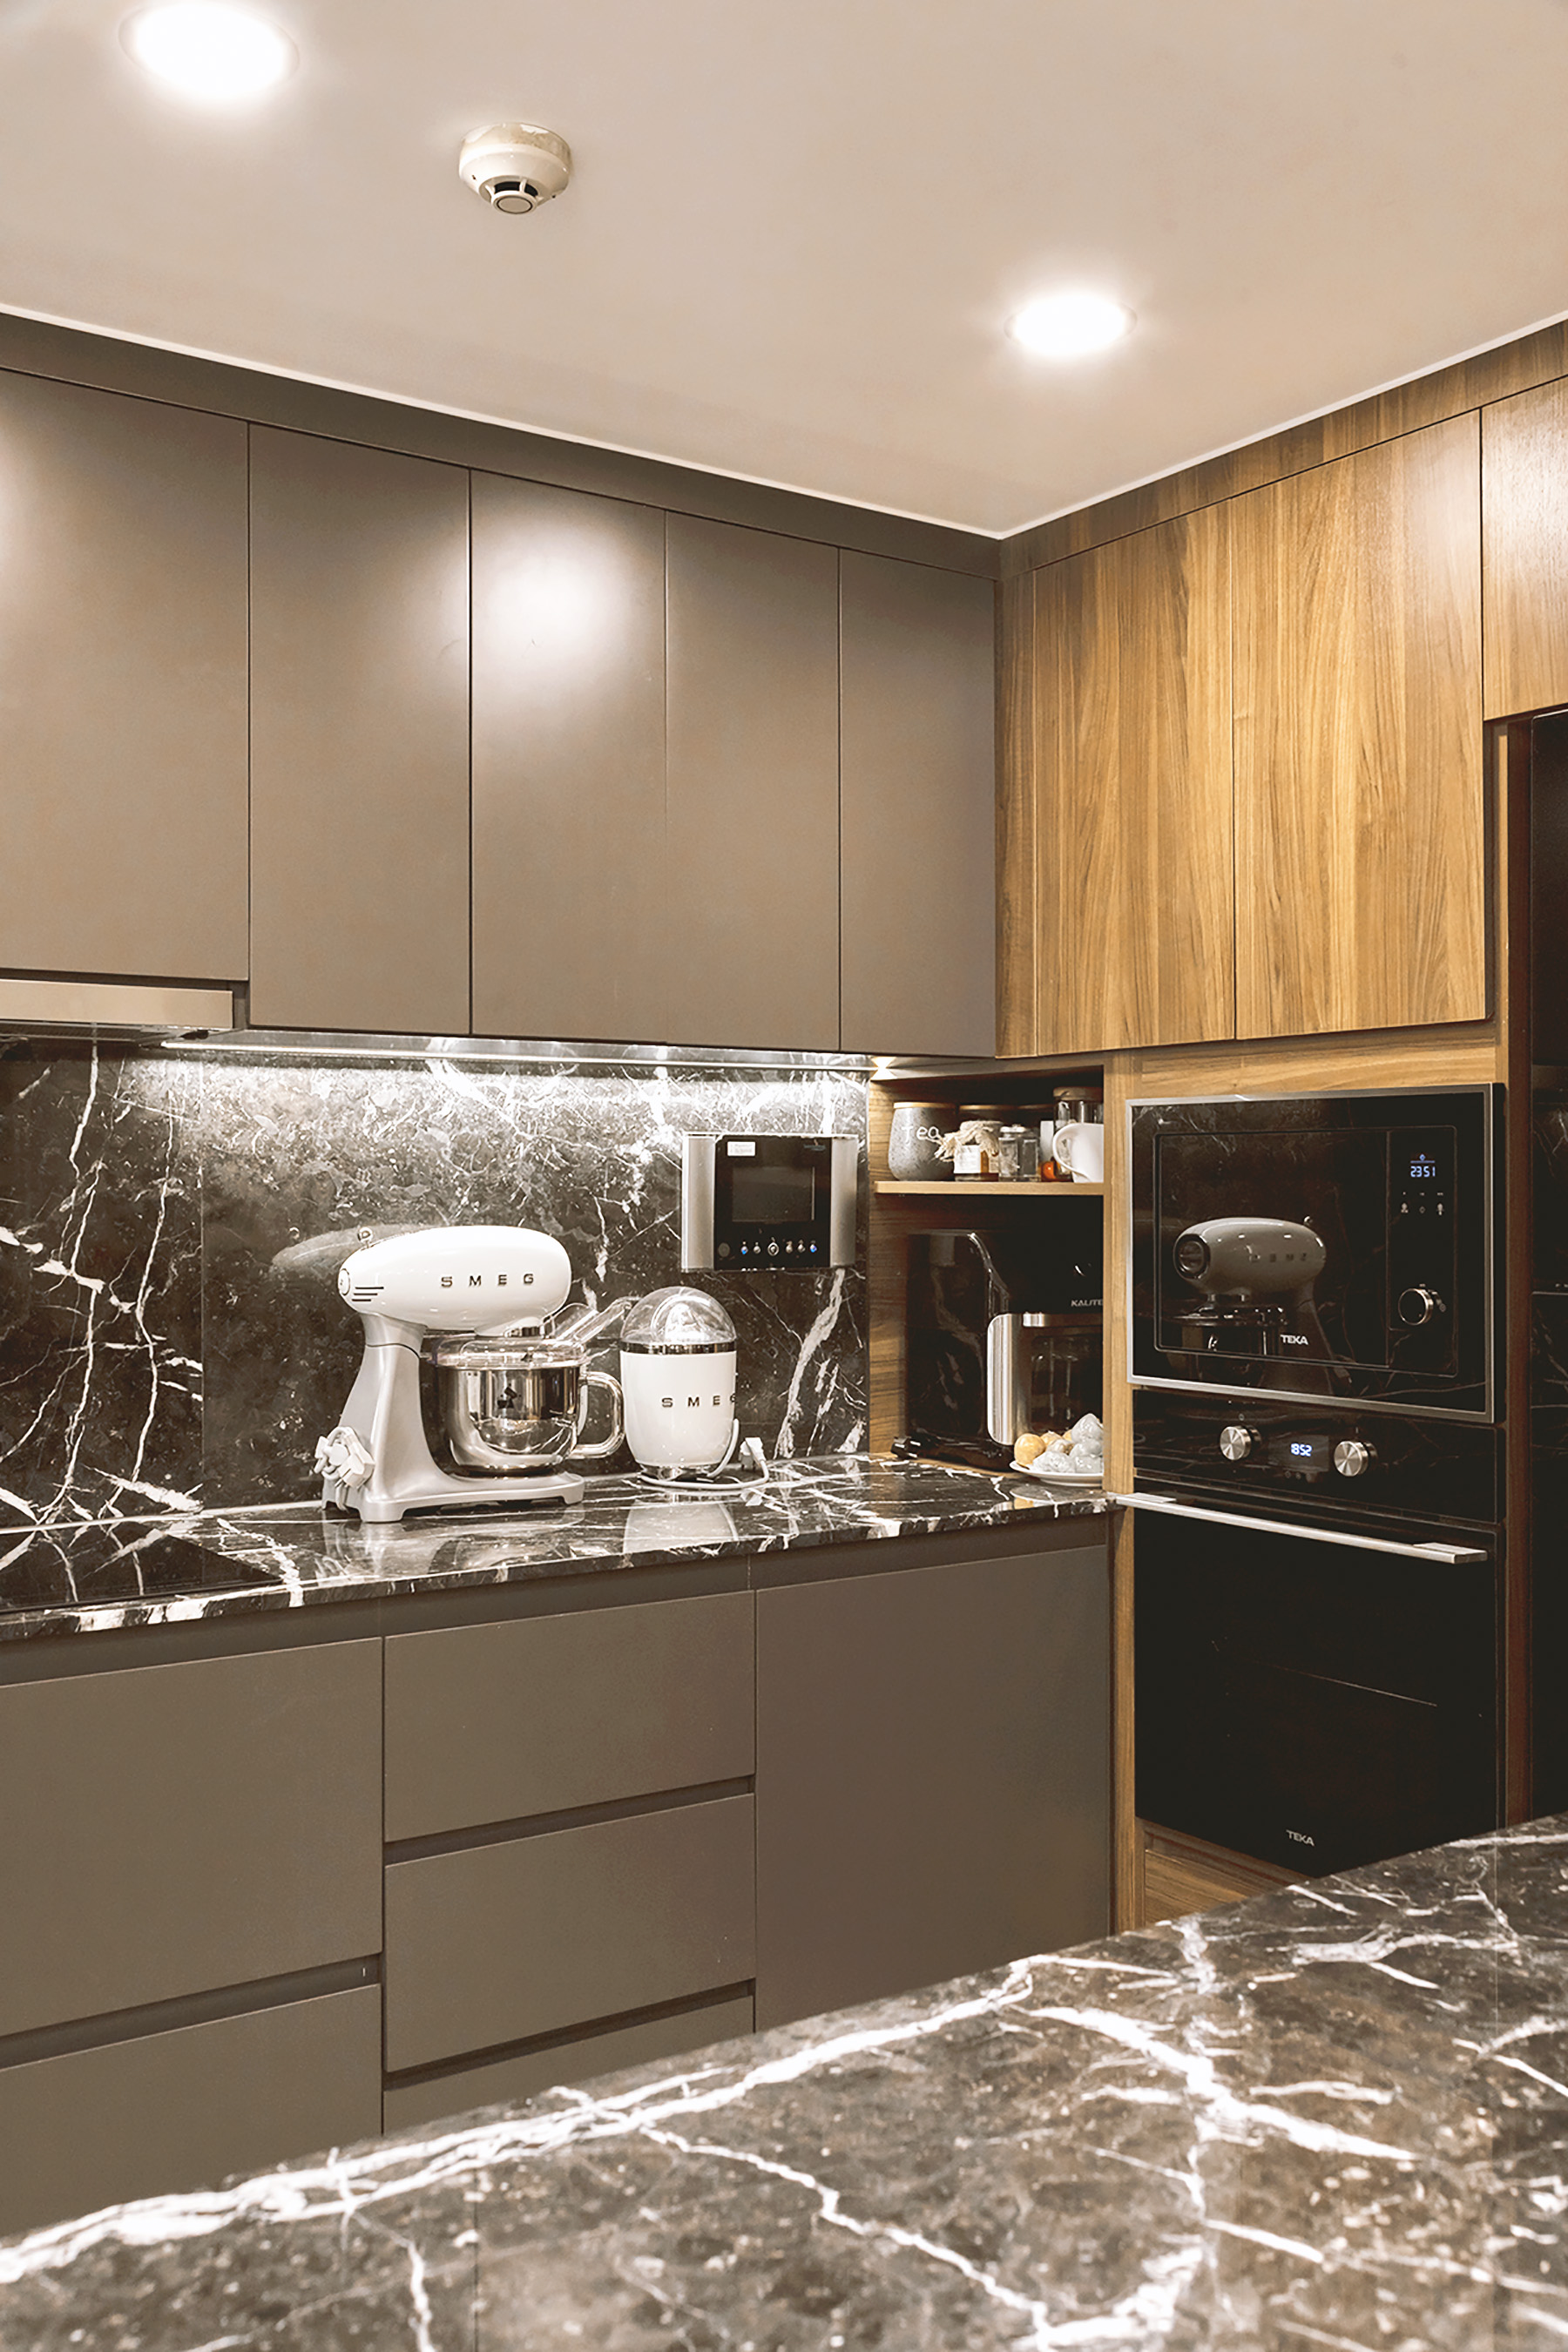 Phòng bếp, phong cách Hiện đại Modern, hoàn thiện nội thất, căn hộ Saigon Pearl Topaz 2